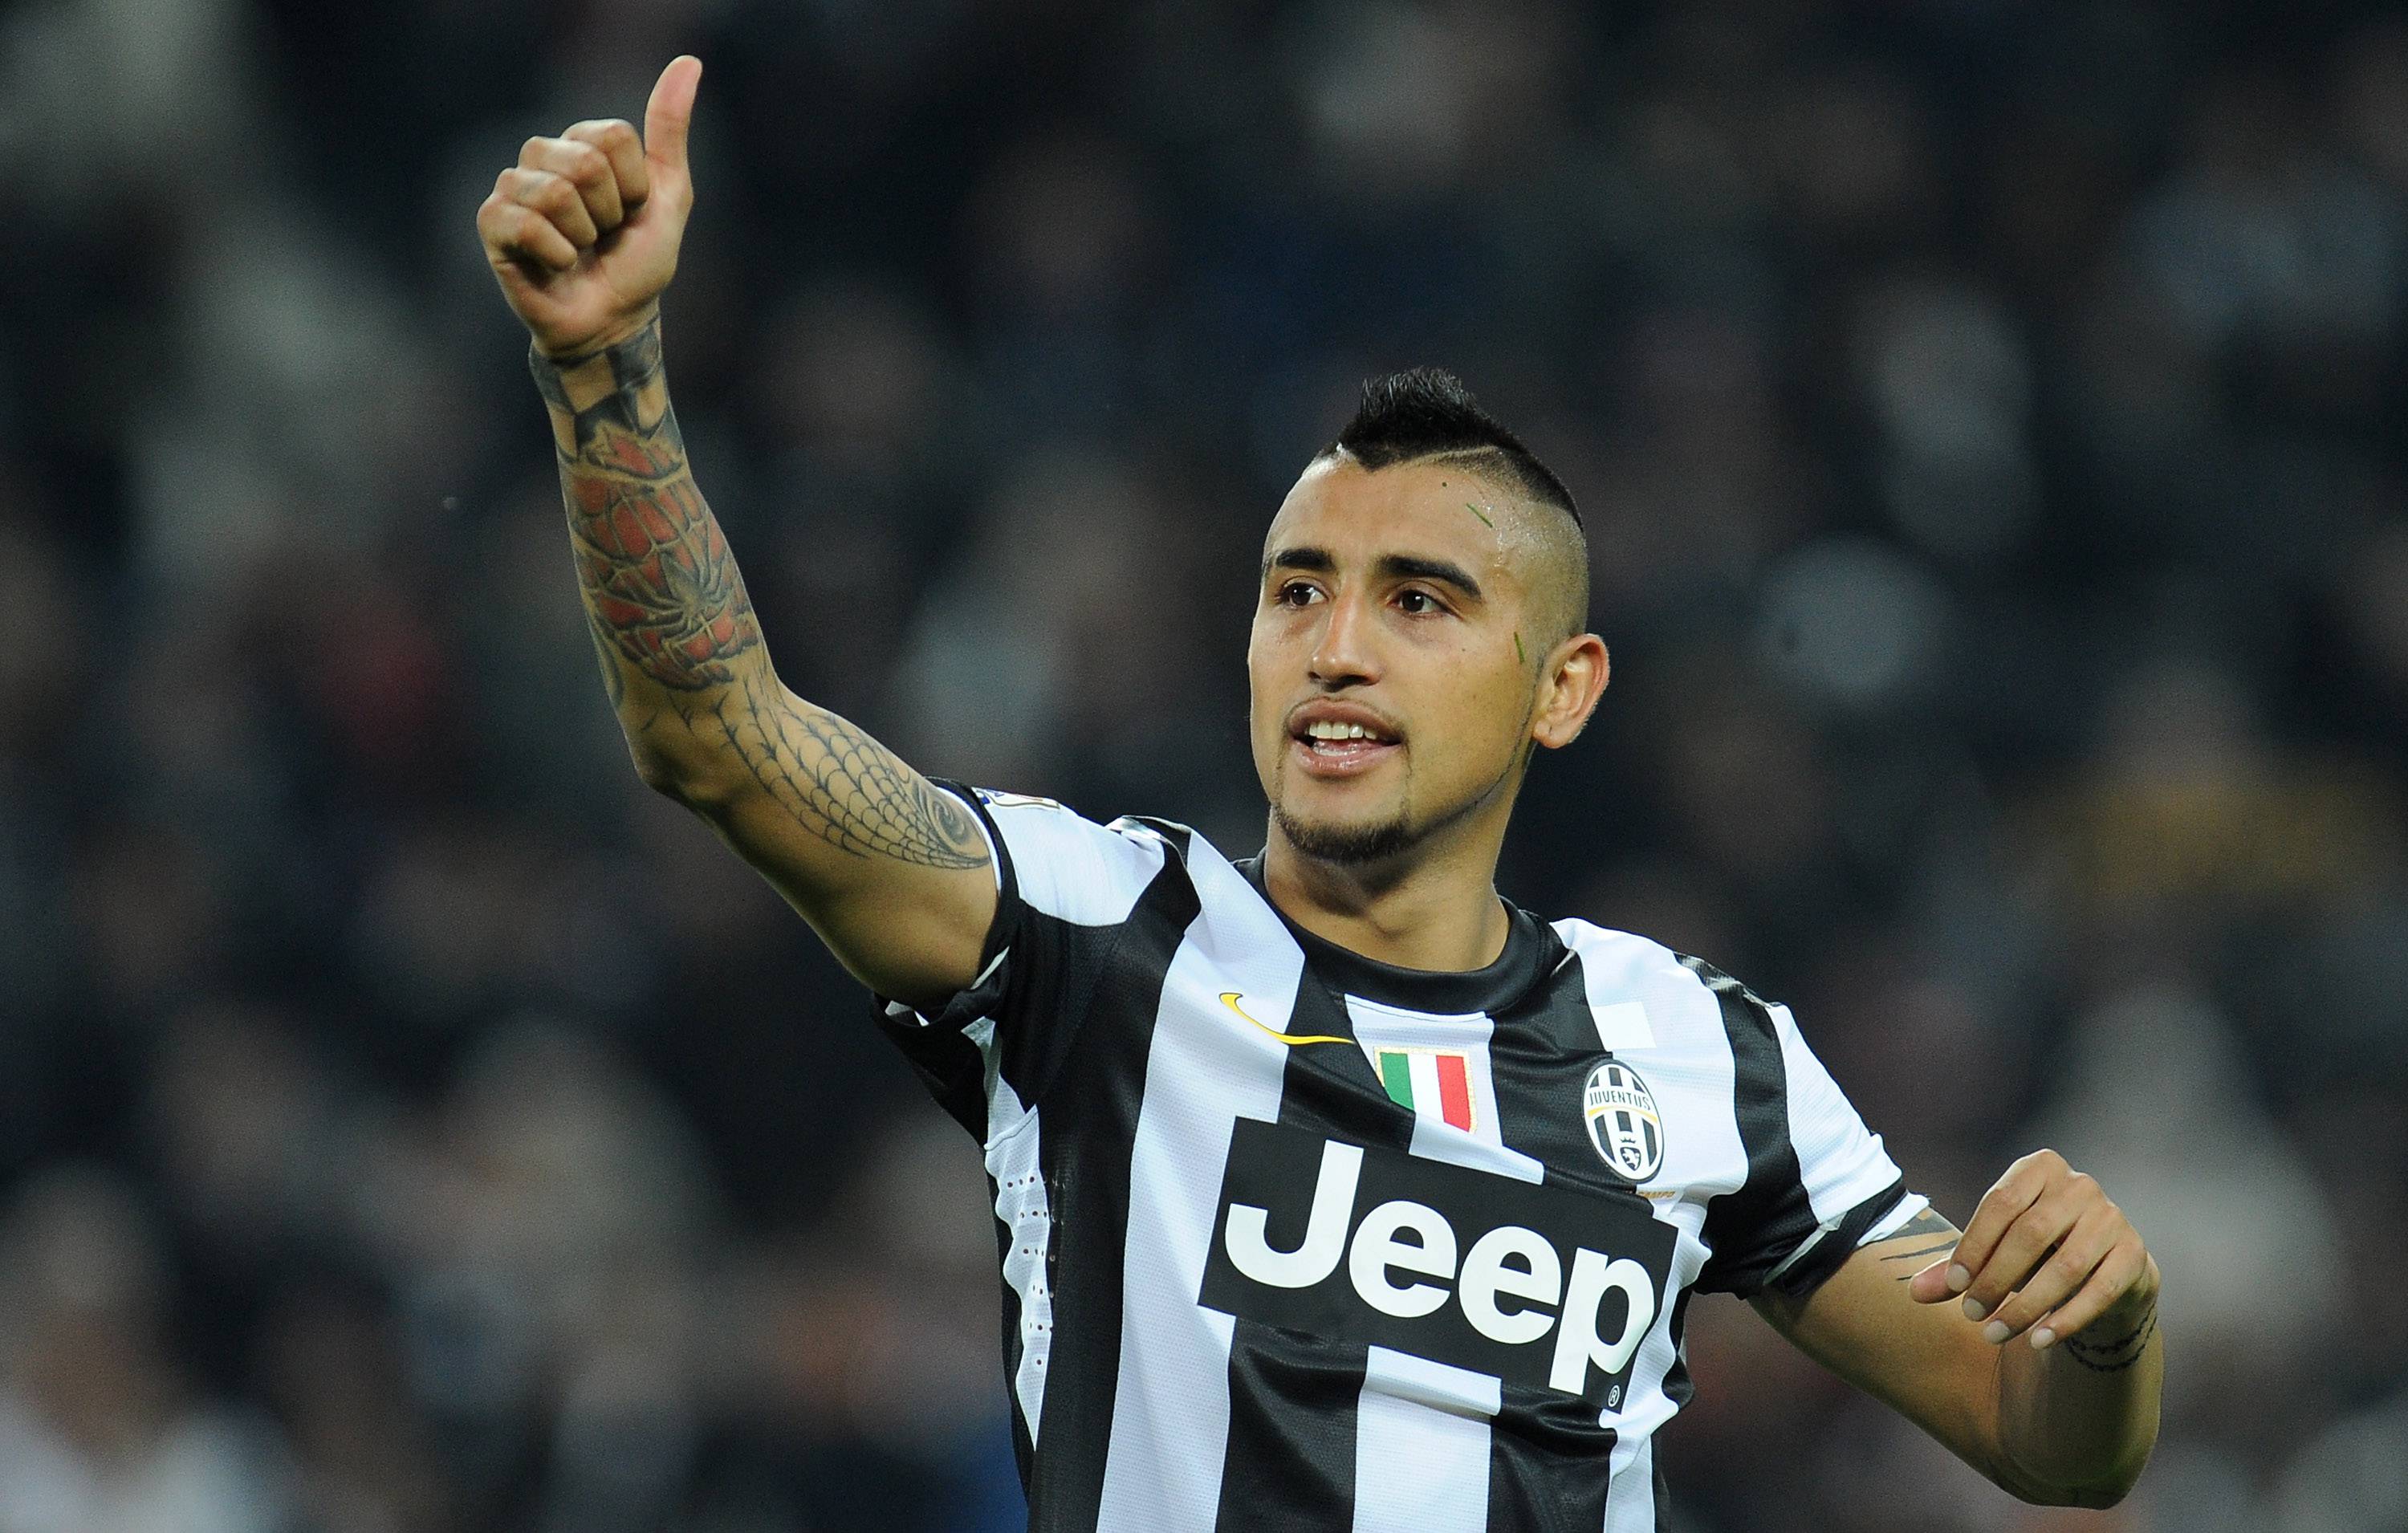 Calciomercato Juventus In Tempo Reale Ultimissime Notizie Mercato Domenica 12 Luglio 2015